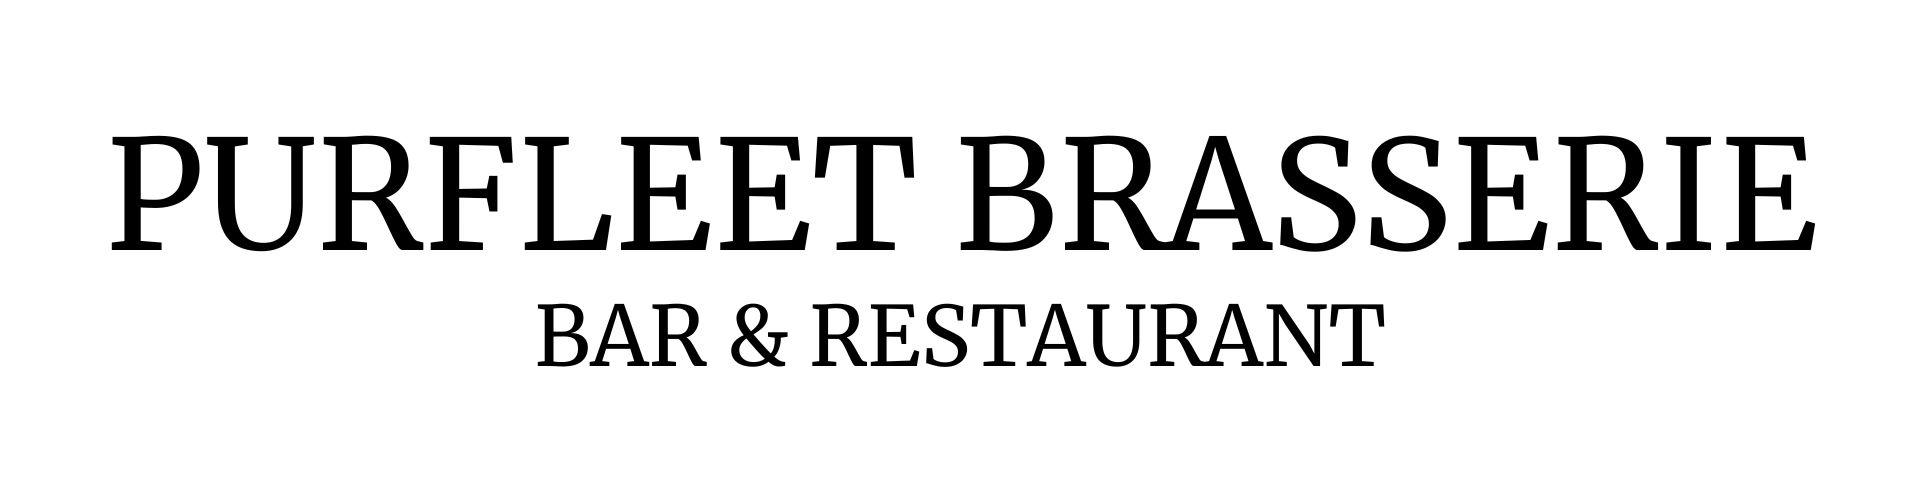 Great Food - Purfleet Brasserie